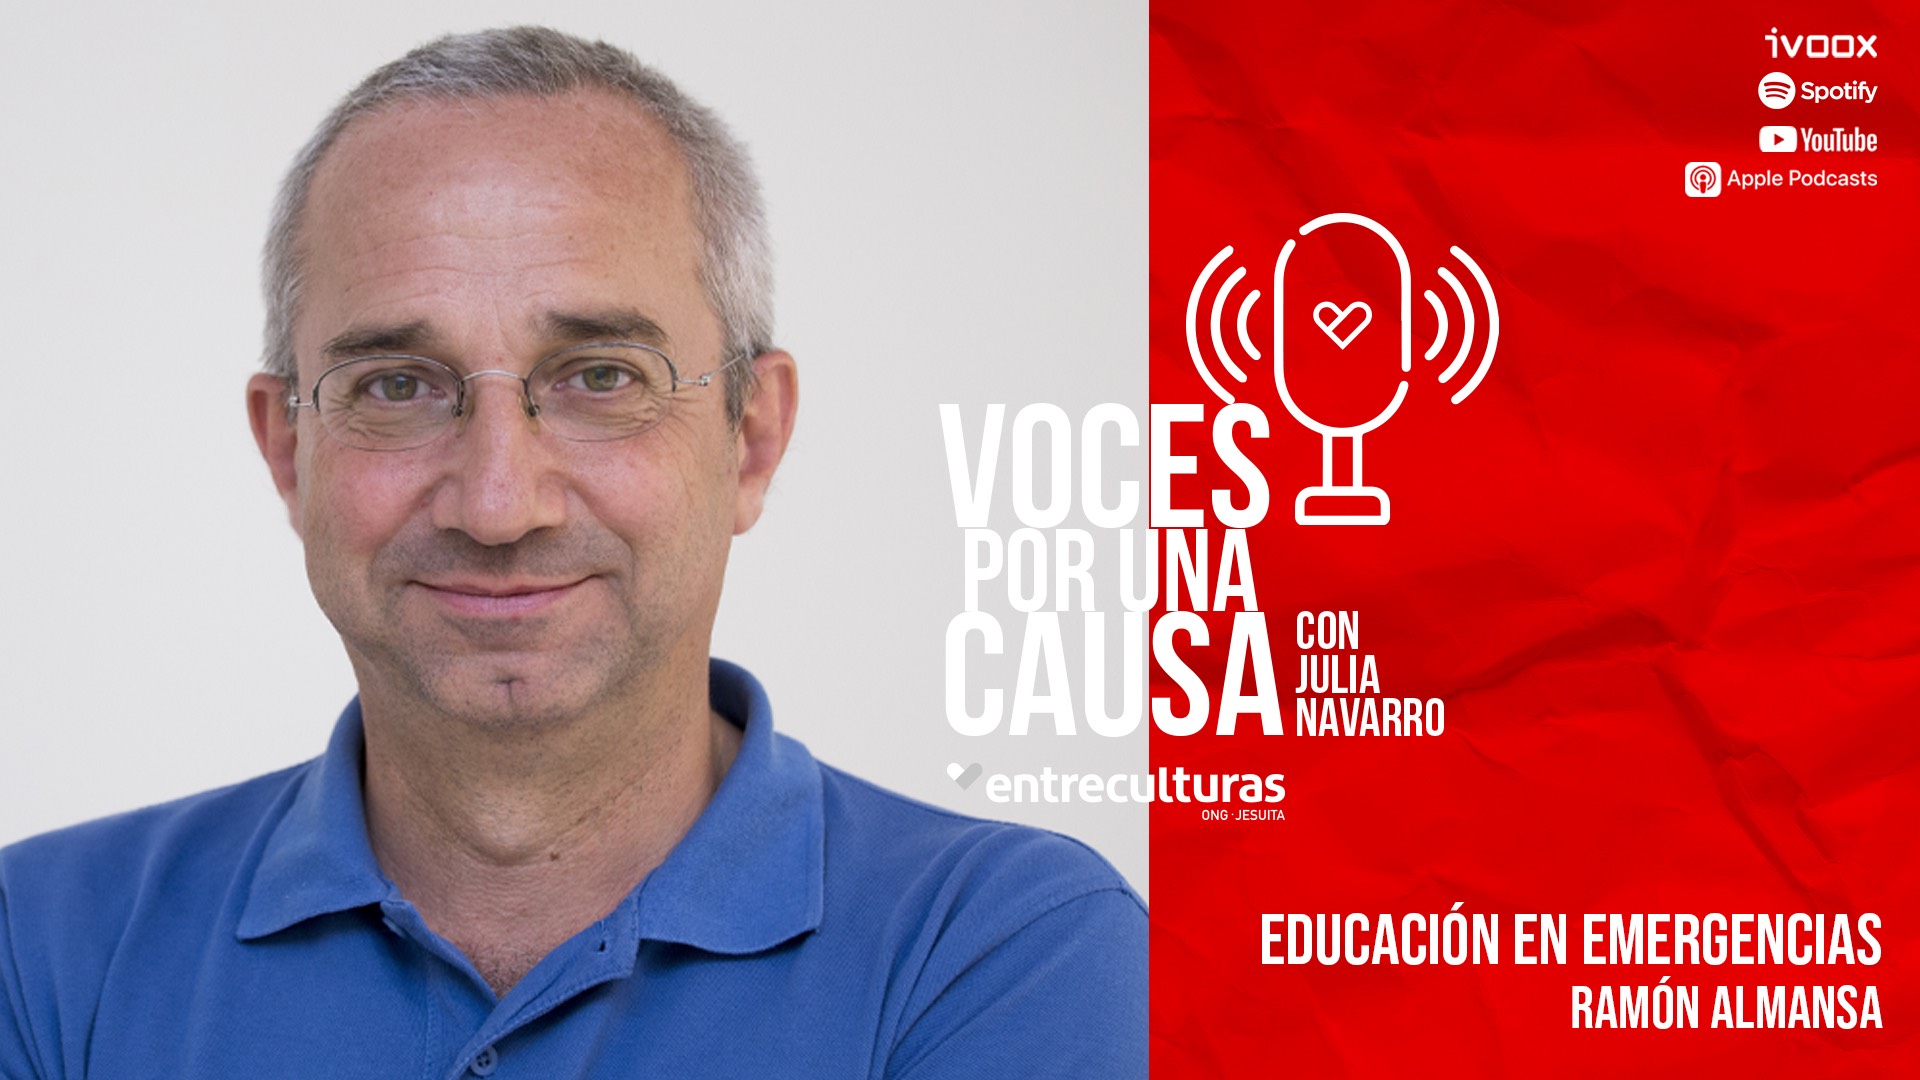 Julia Navarro y Ramón Almansa charlan sobre educación en ‘Voces por una Causa’